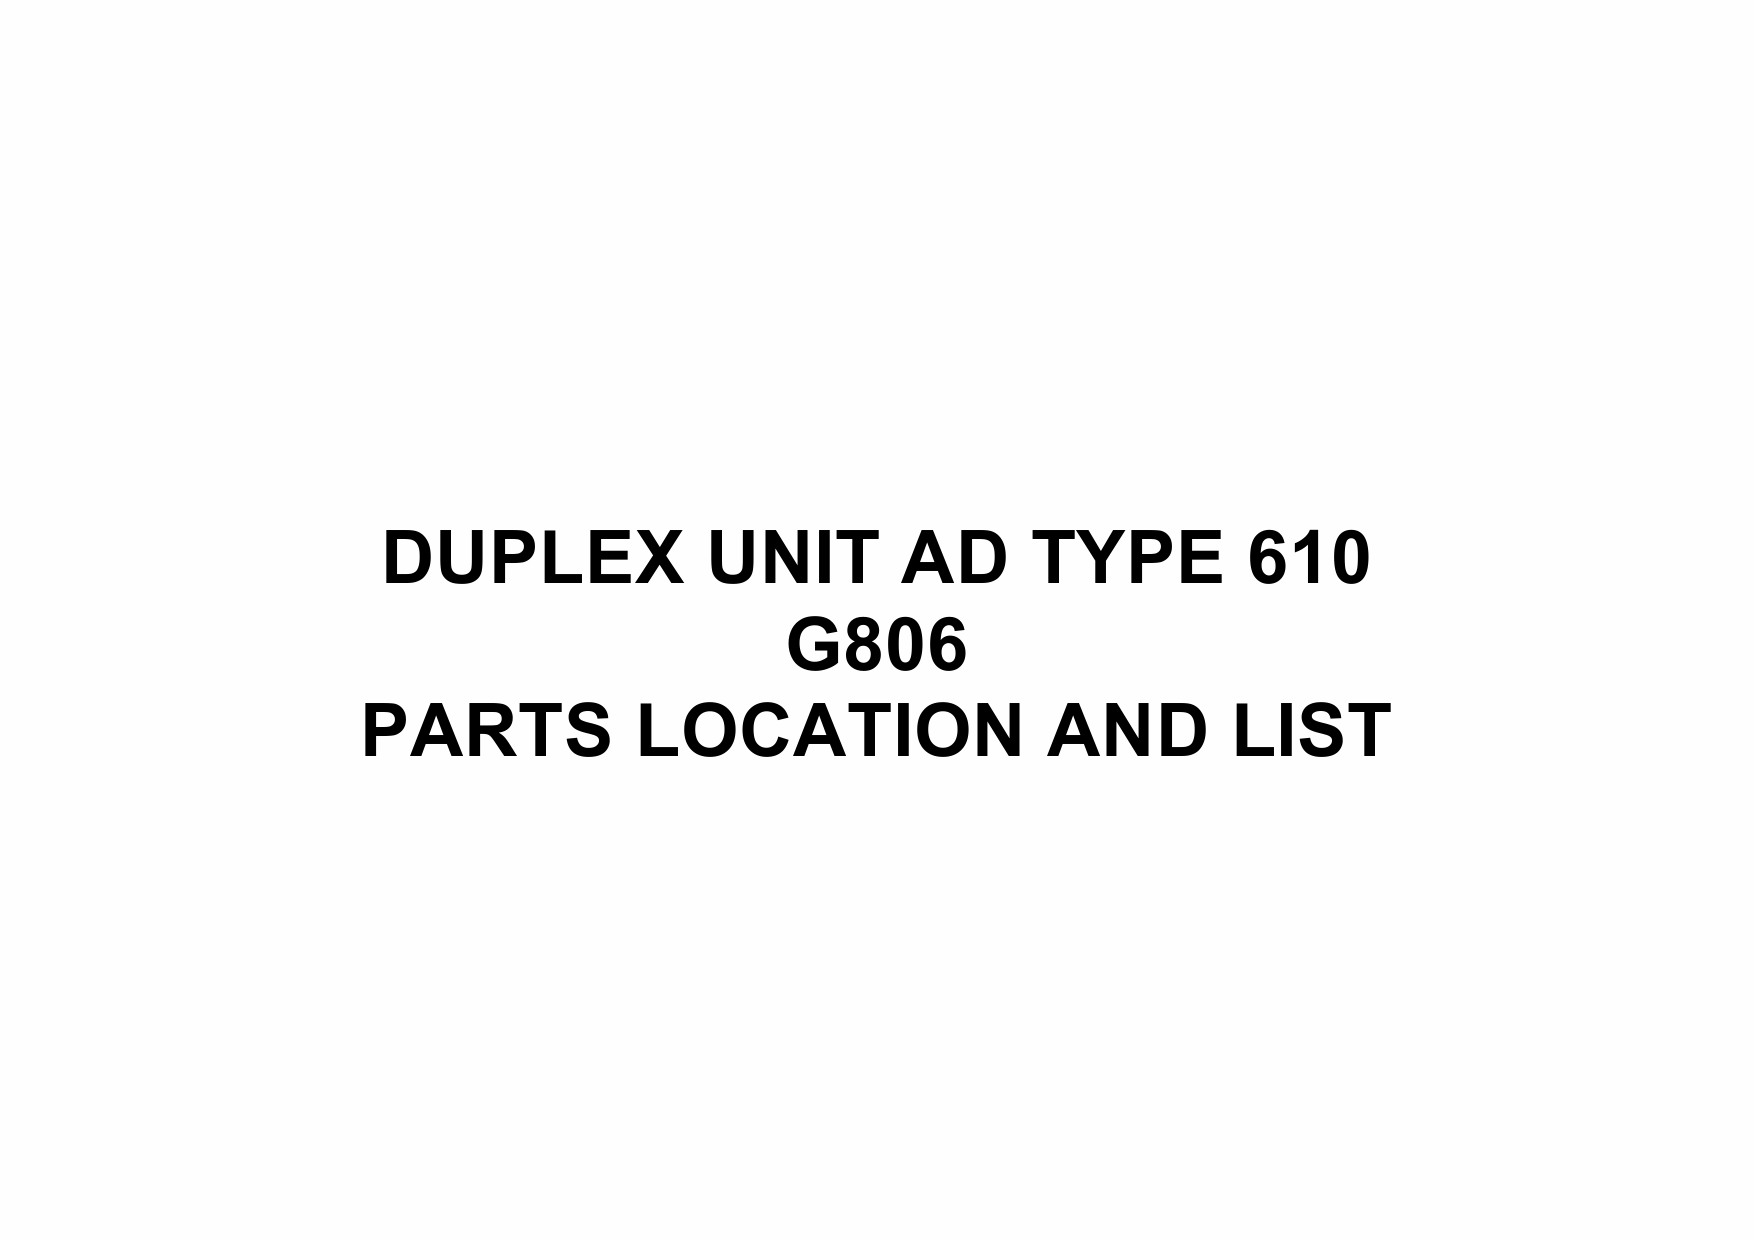 RICOH Options G806 DUPLEX-UNIT-AD-TYPE-610 Parts Catalog PDF download-1